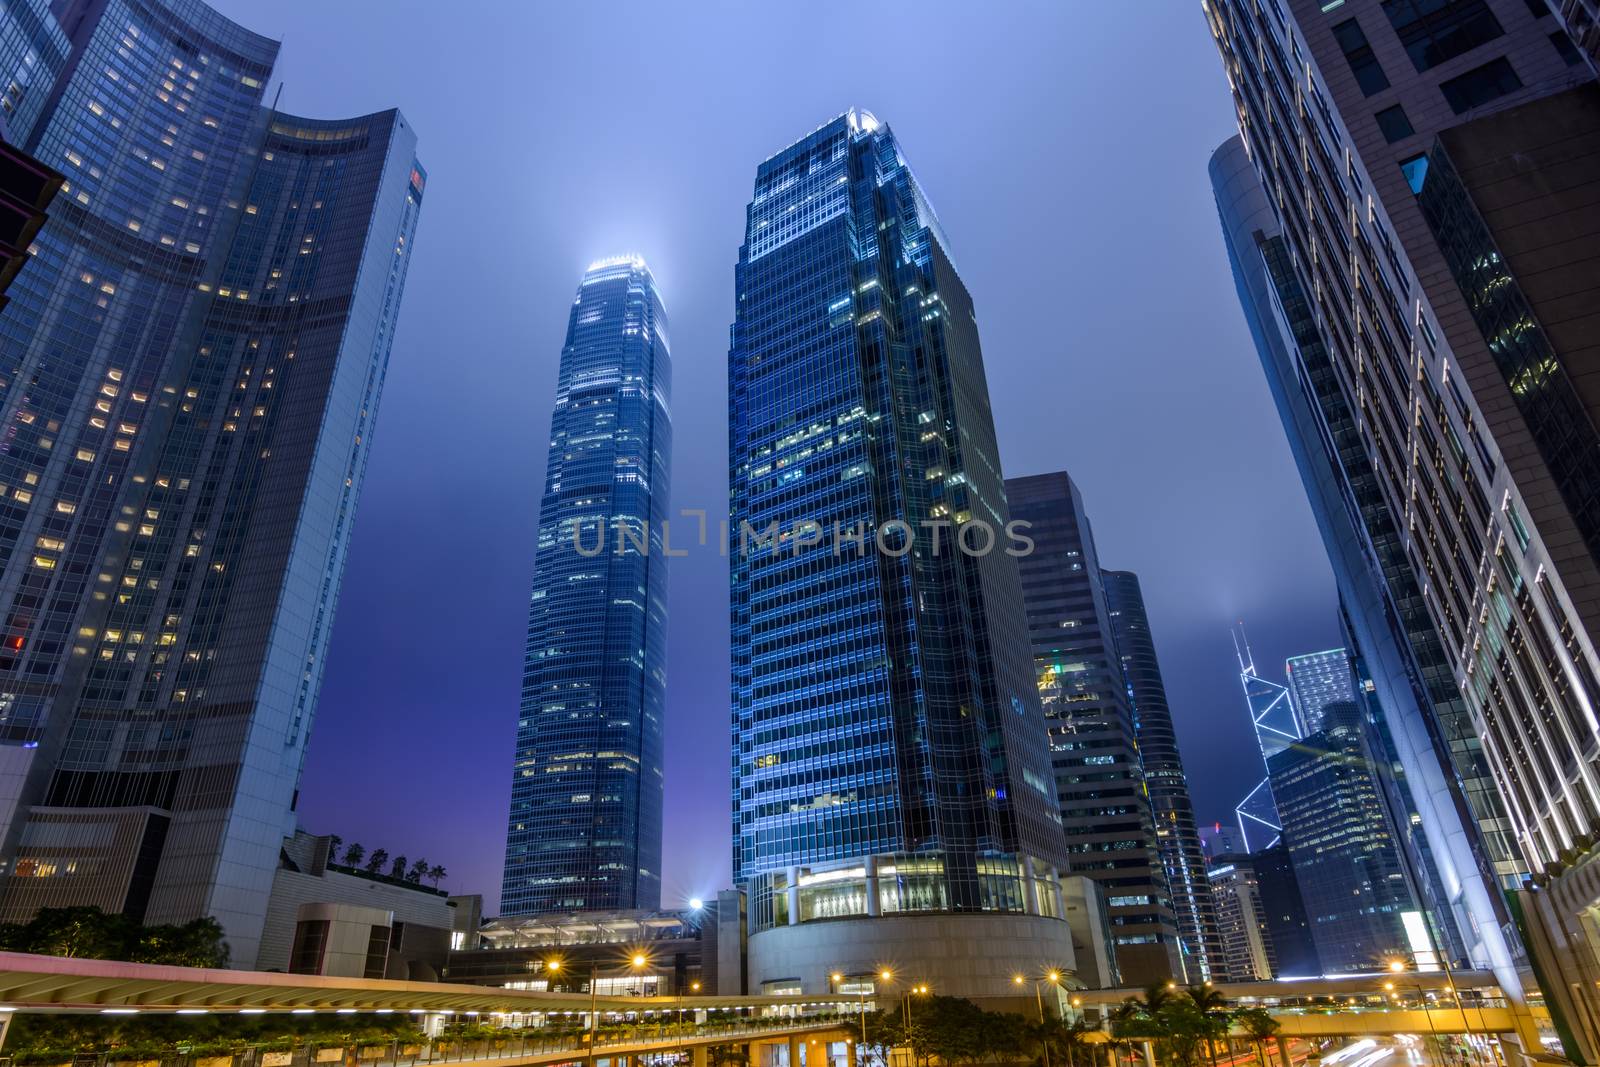 Hong Kong skyscrapers by elwynn